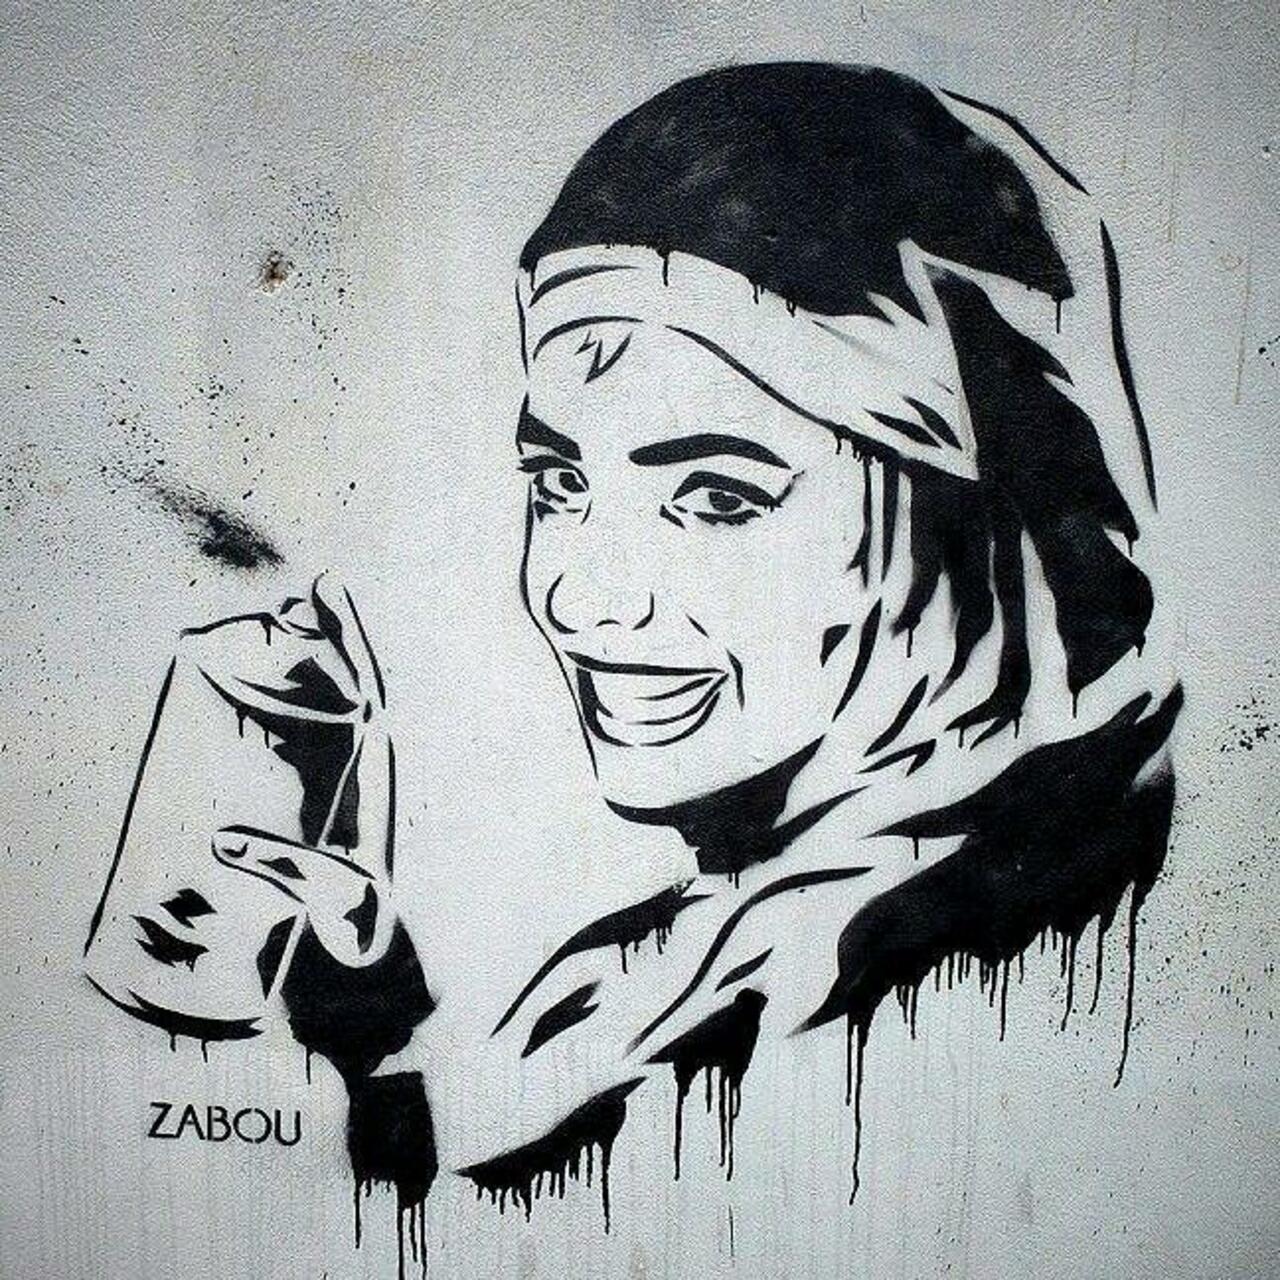 #Paris #graffiti photo by @senyorerre http://ift.tt/1W3hHOw #StreetArt https://t.co/qzBK3mDxrQ